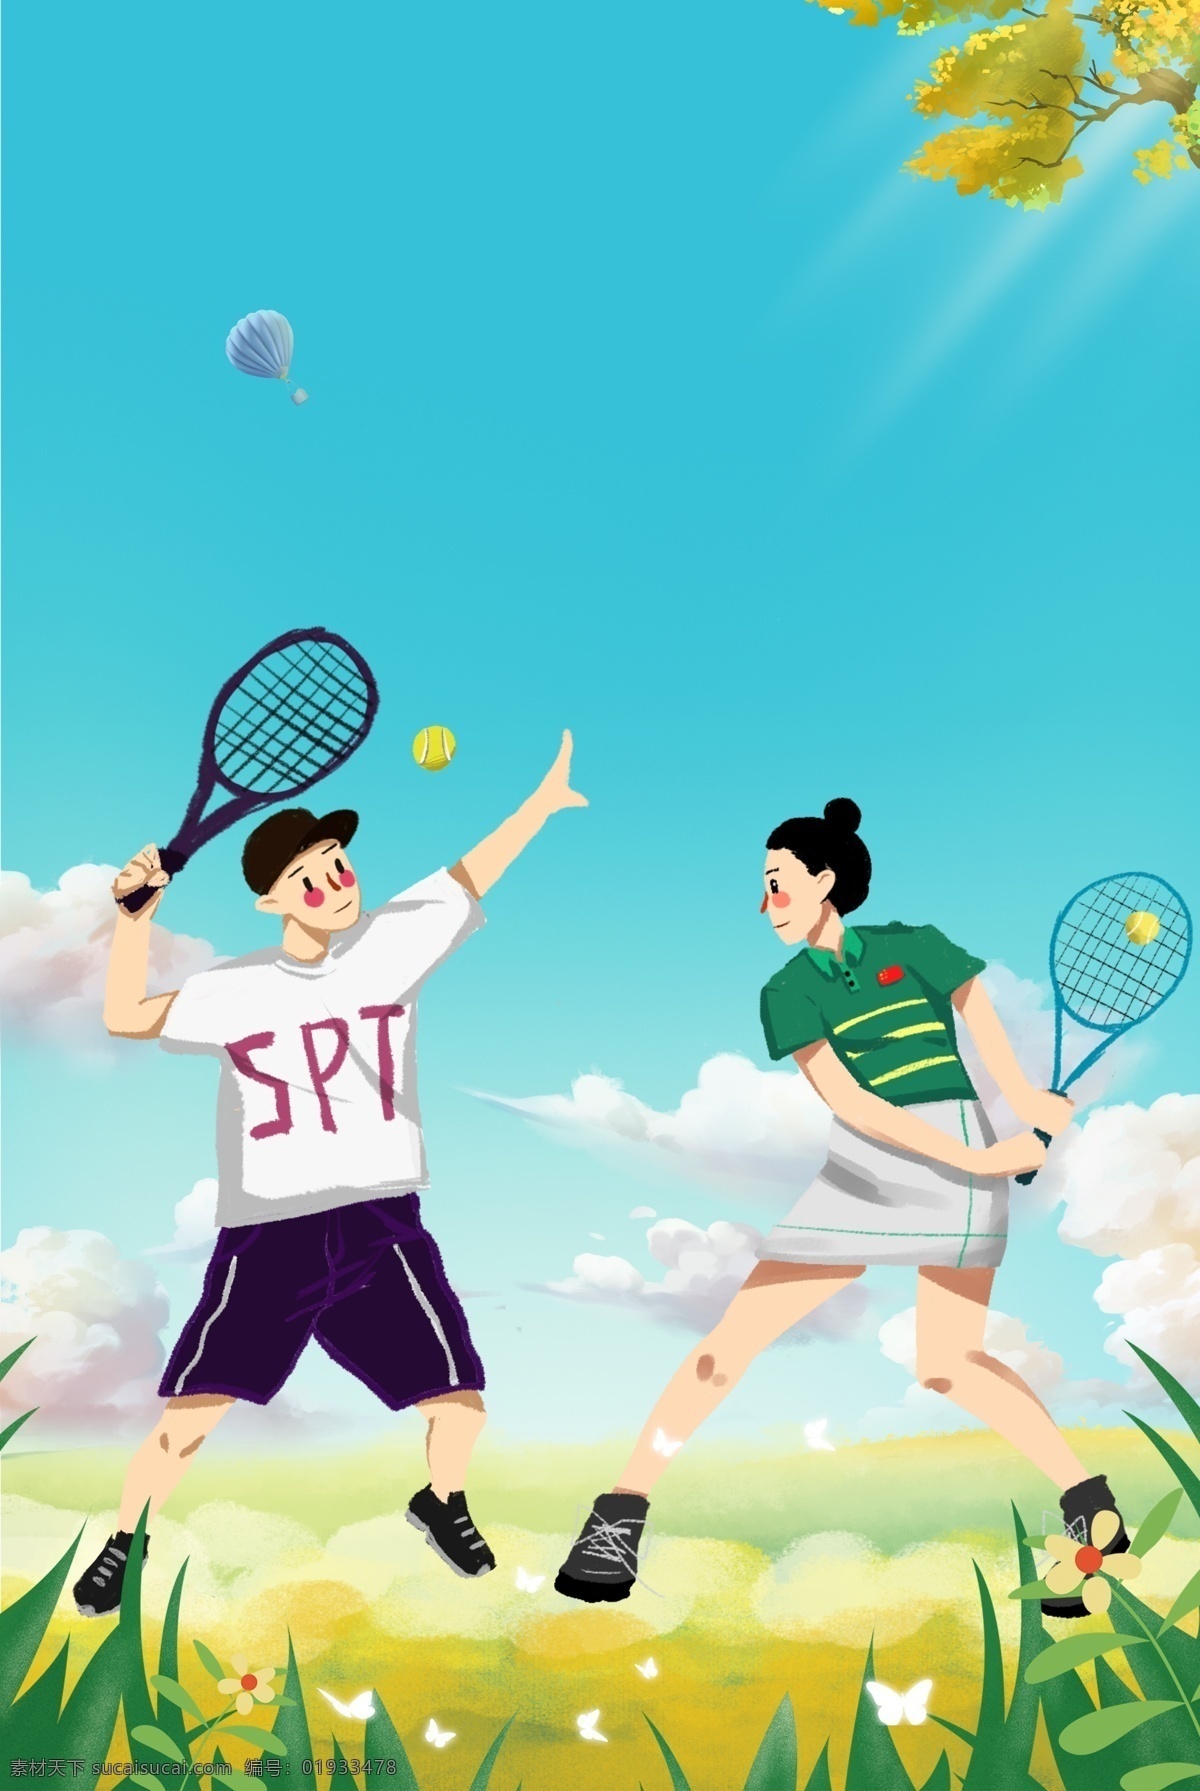 球类运动 网球 比赛 运动 海报 体育项目 卡通人物 奥运项目 网球比赛 奥运会 打网球 运动会 运动员 体育 健身